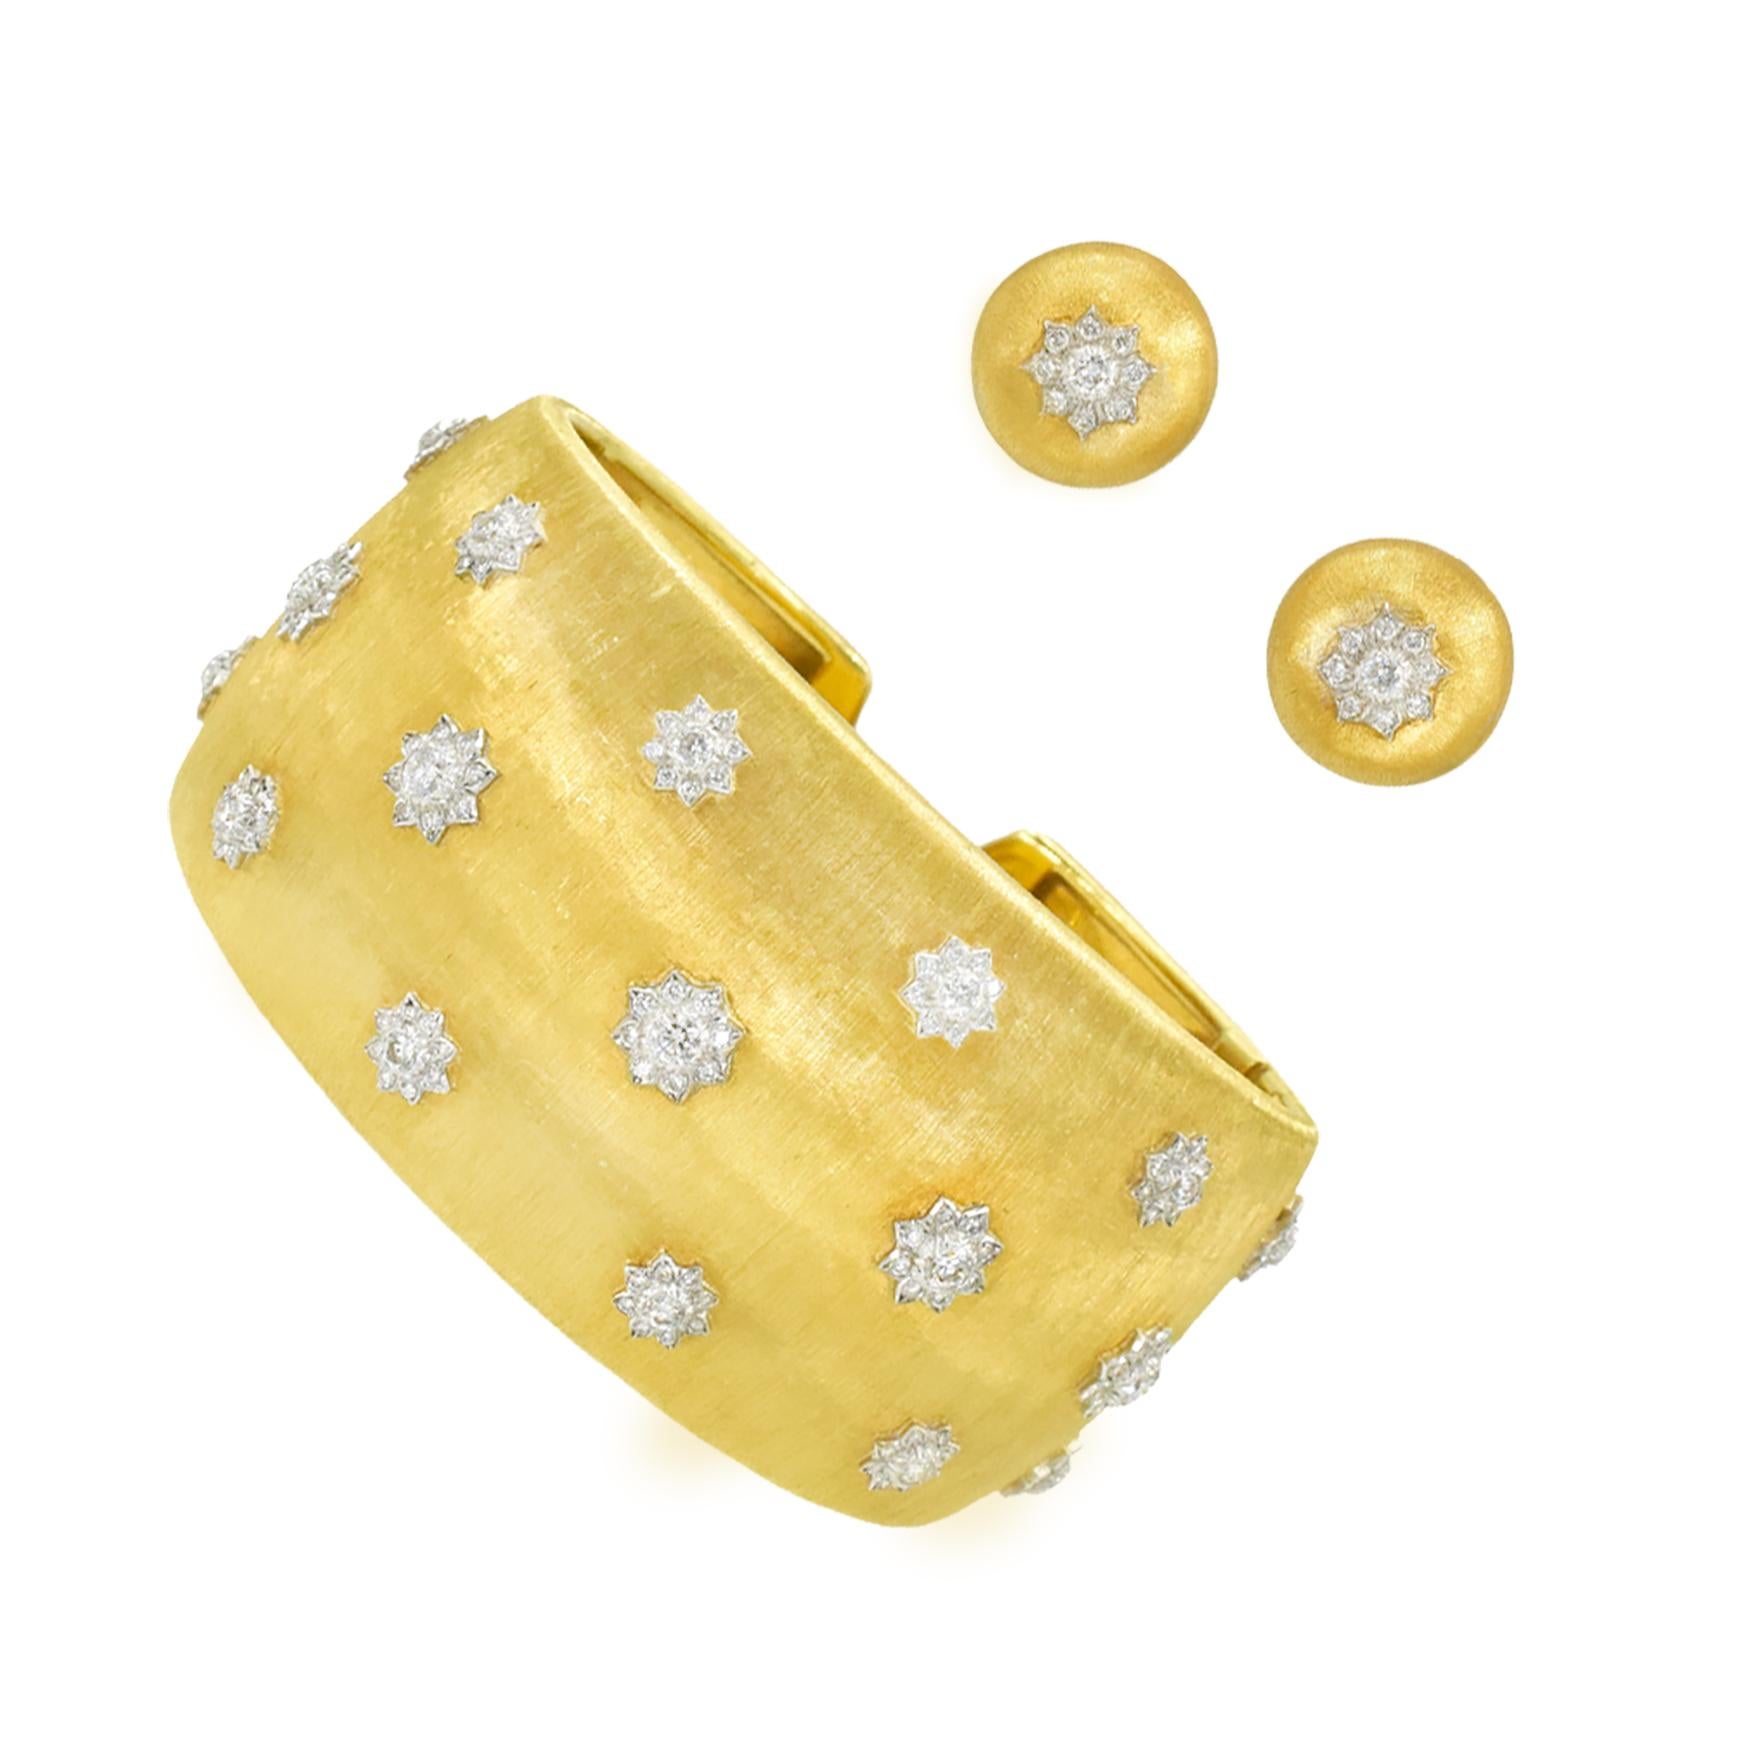 Ensemble bracelet et clip d'oreille en or jaune et blanc 18 carats de Buccellati 'Macri' avec accents de diamants. L'ensemble
présente un bracelet et des boucles d'oreilles en or jaune 18 carats réalisés en forme de dôme, avec la signature de